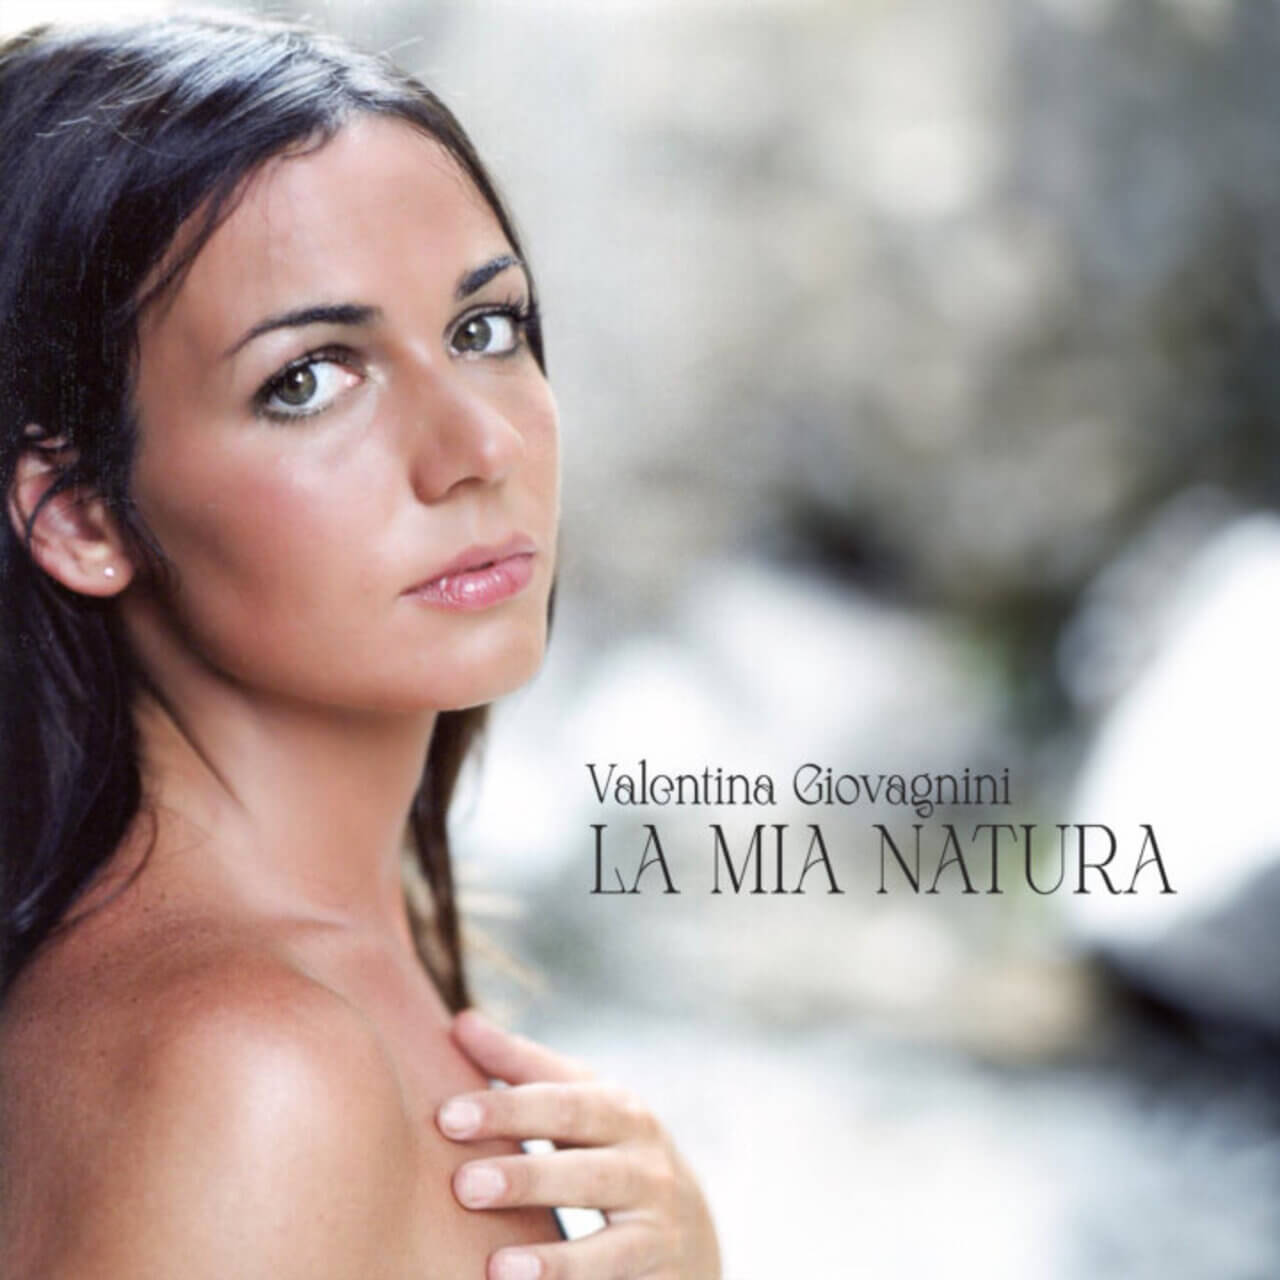 Valentina Giovagnini, copertina dell'album "La mia natura"